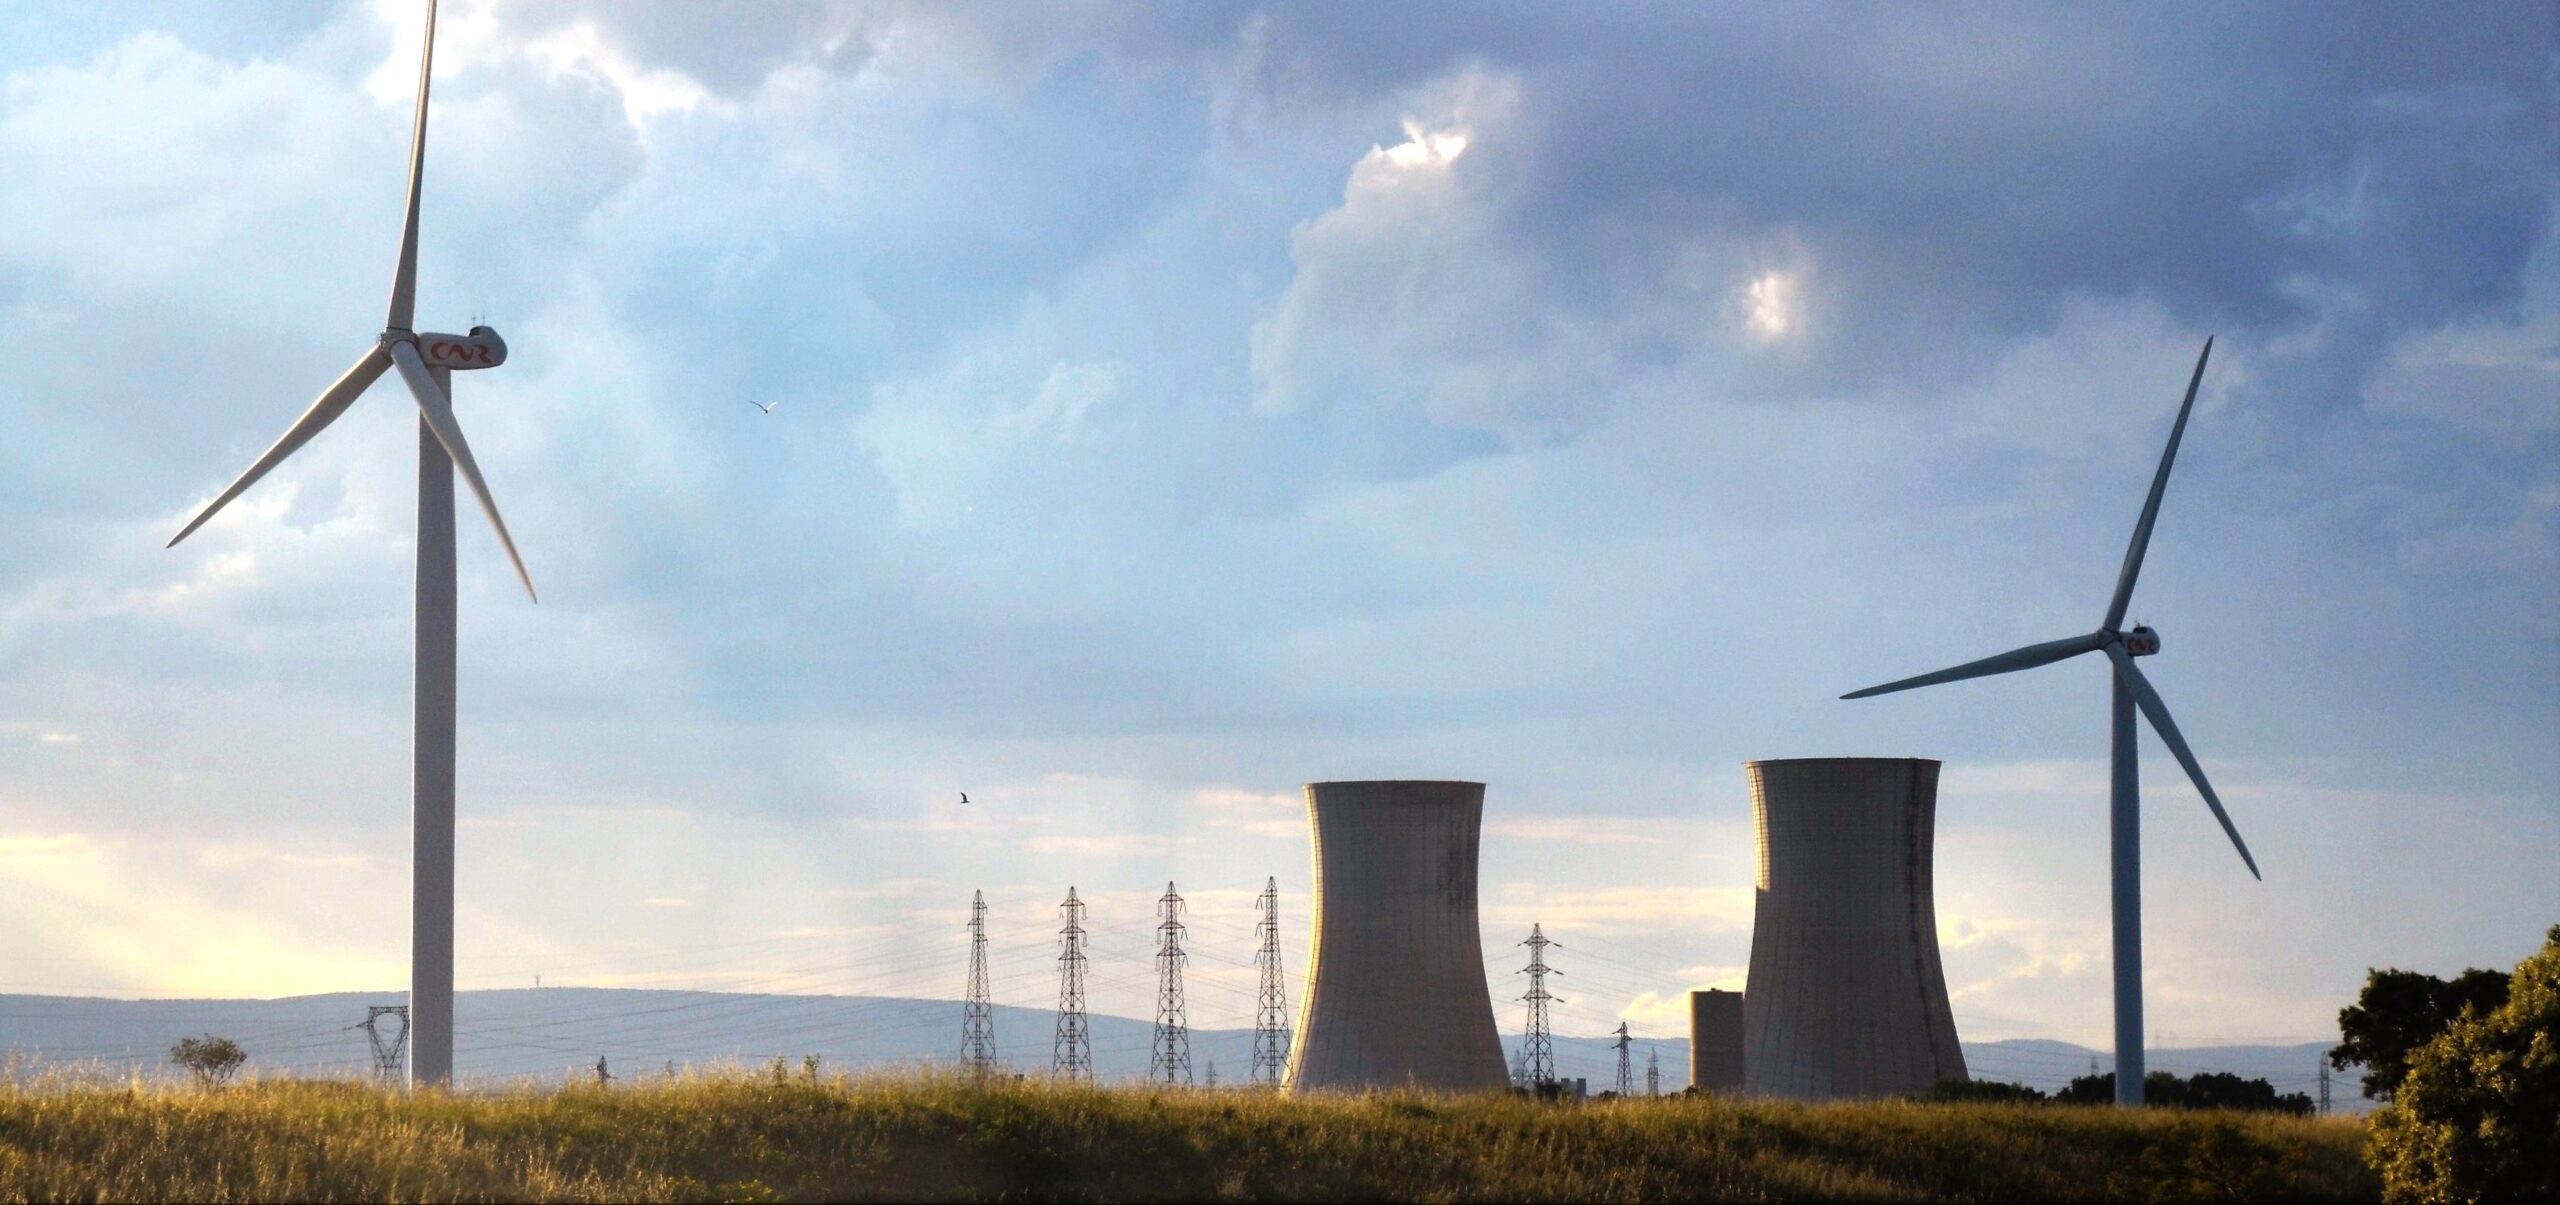 Polska zamierza do 2040 roku wytwarzać trzy czwarte swojej energii elektrycznej ze źródeł odnawialnych i energii jądrowej